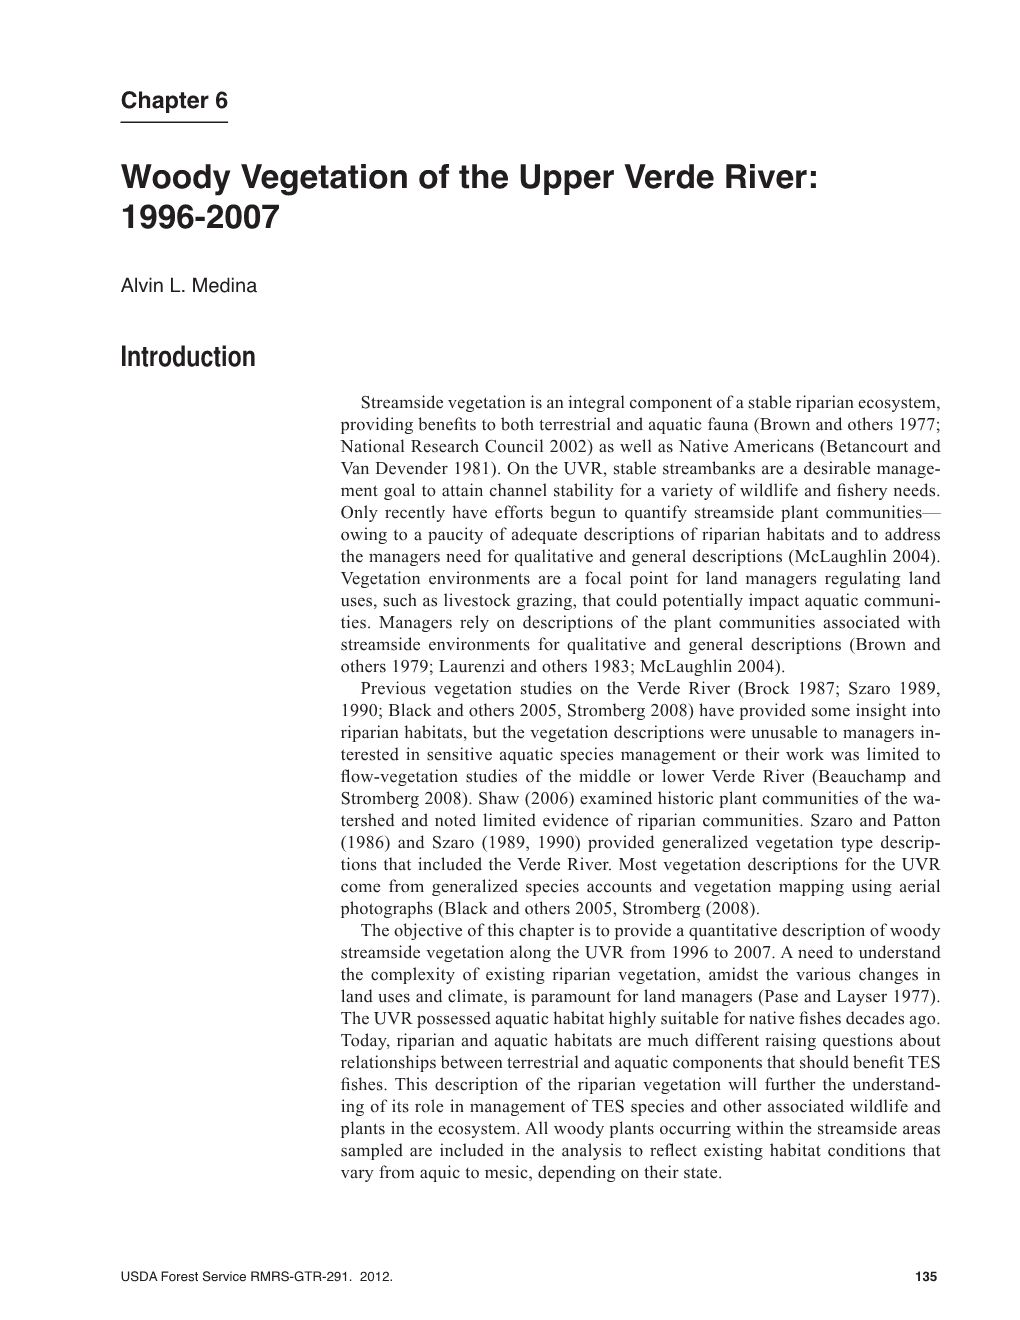 Woody Vegetation of the Upper Verde River: 1996-2007